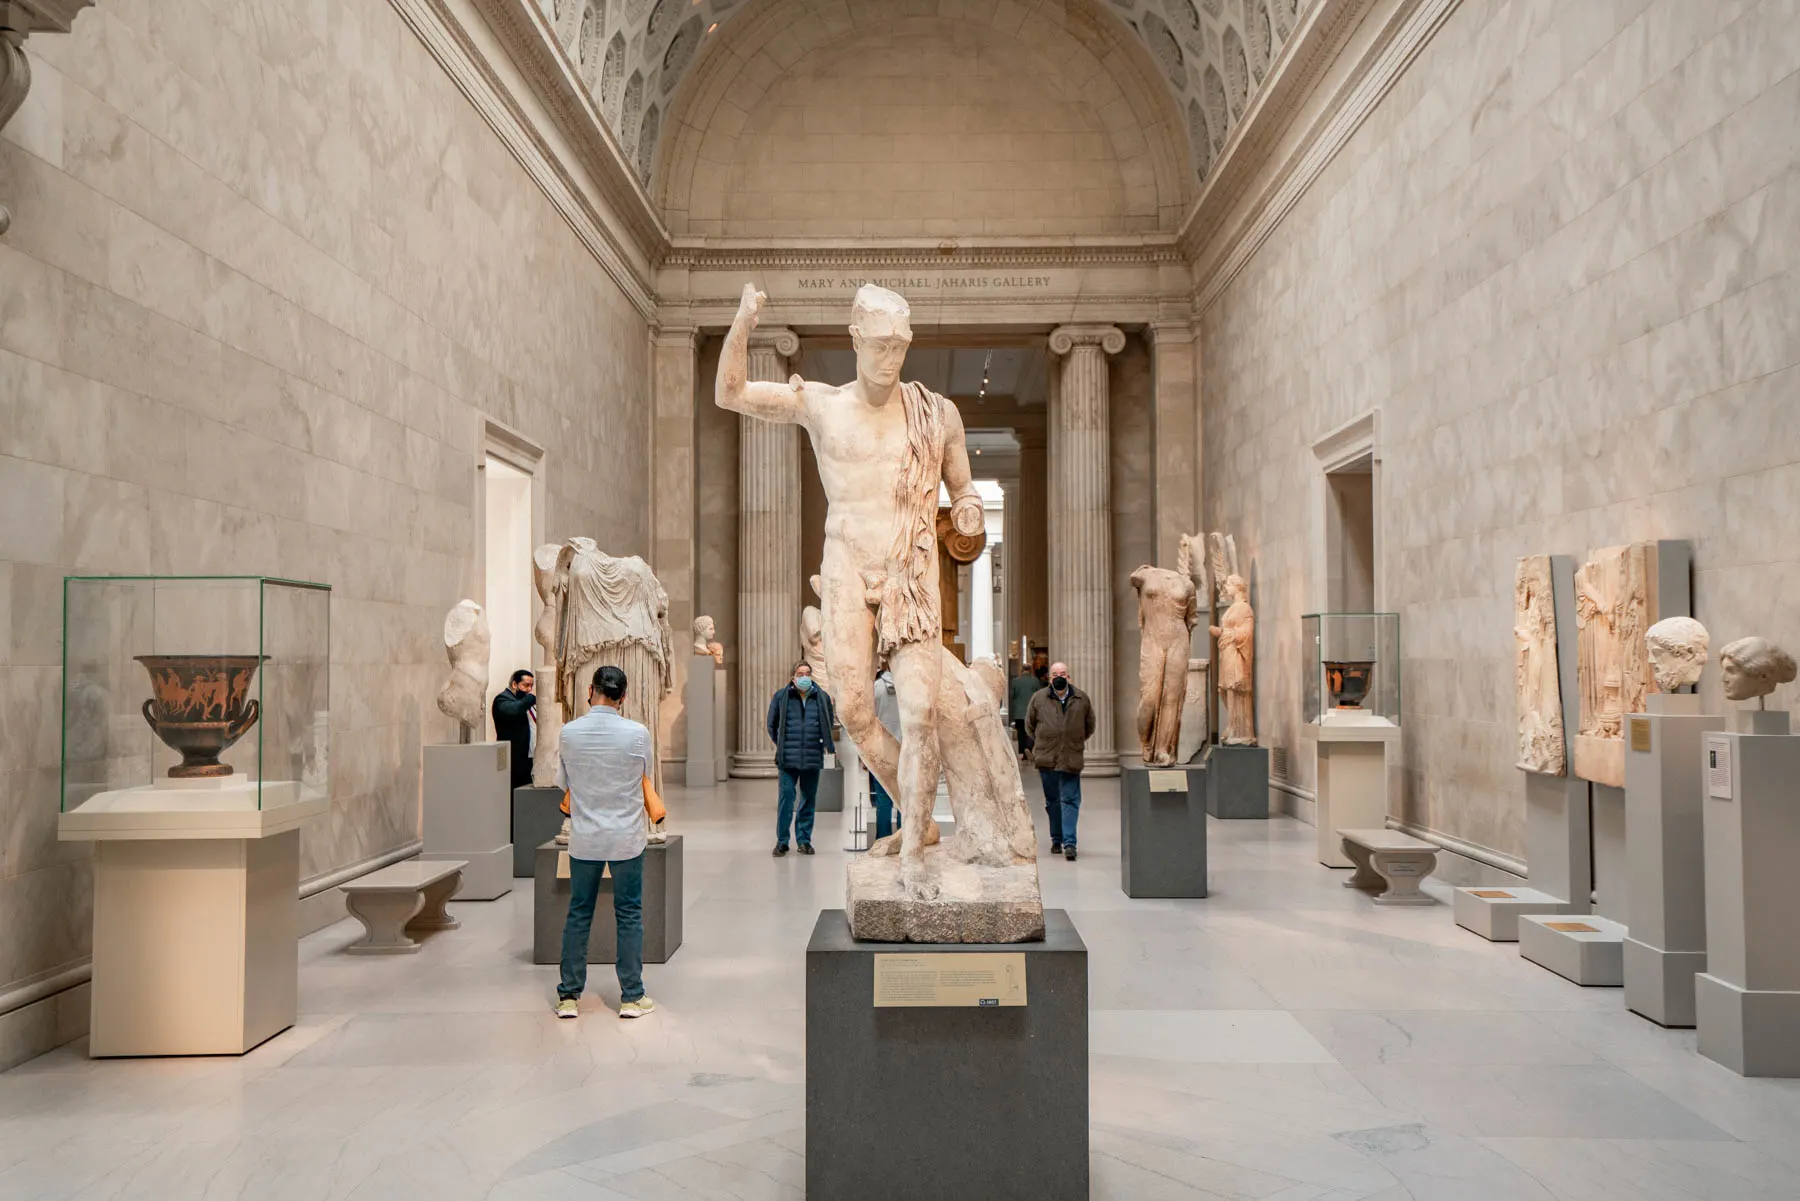 Greek statue inside the MET, Best things to see at the Met